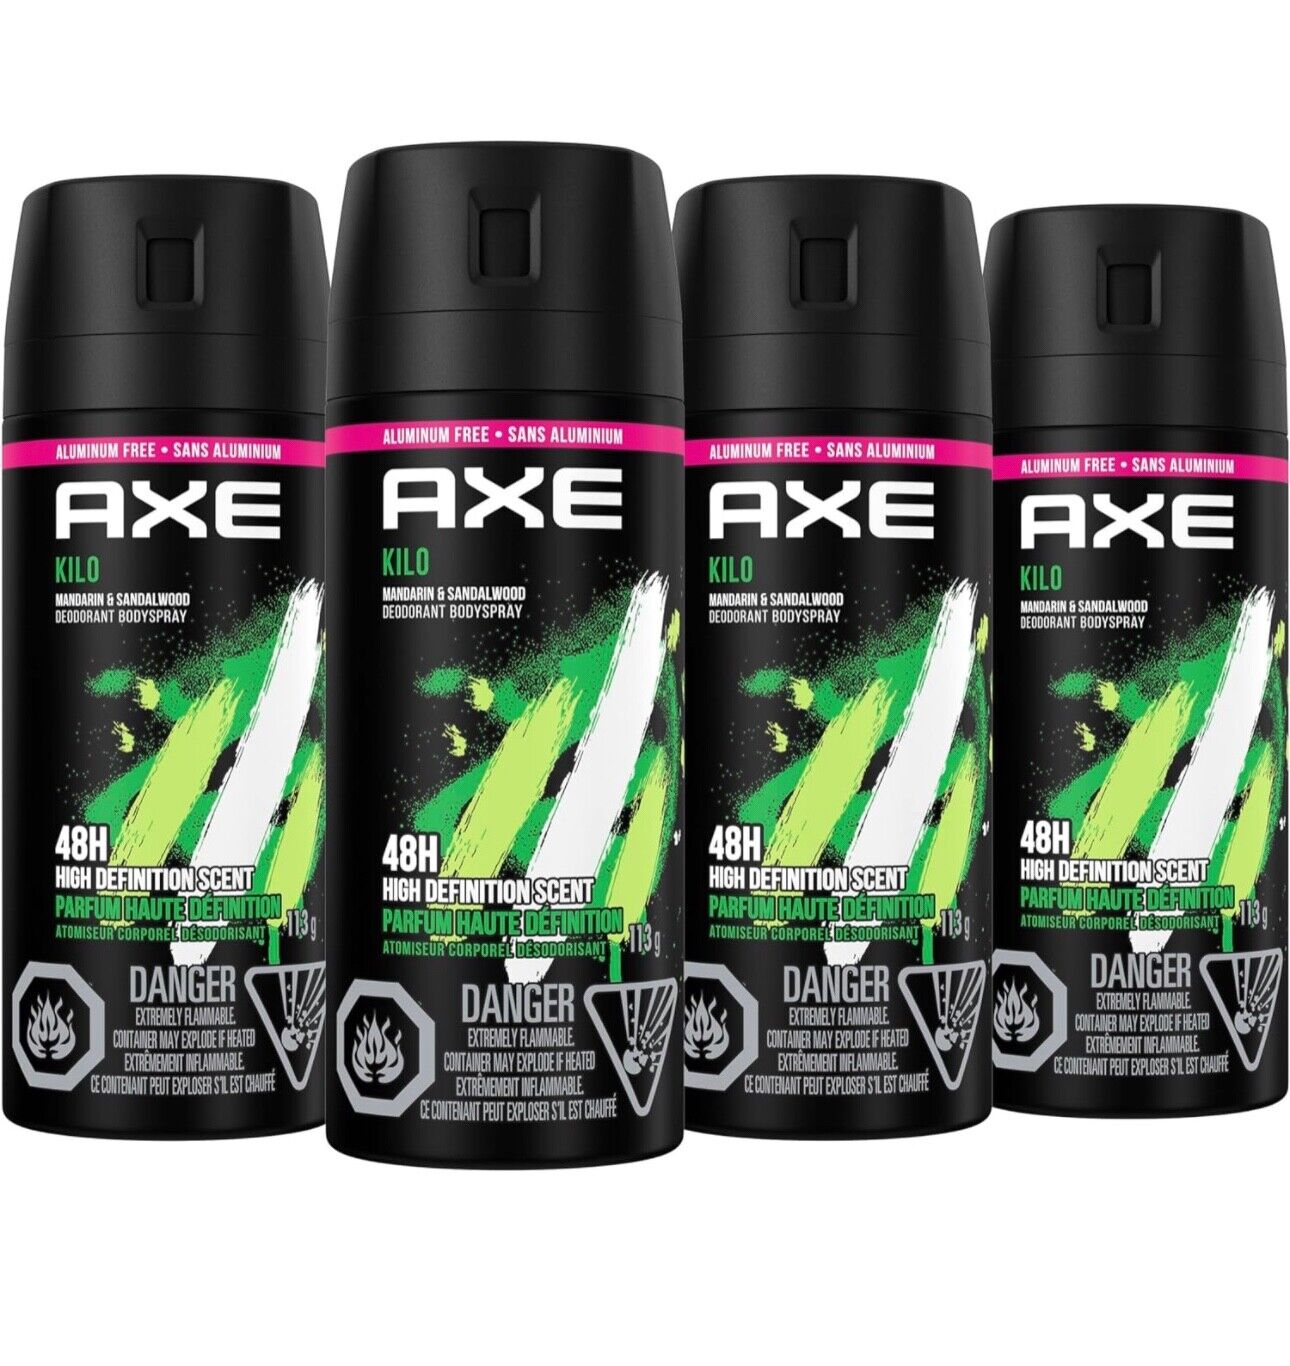 Set of 4 AXE Kilo Deodorant Body Spray 4oz NEW ALUMINUM FREE